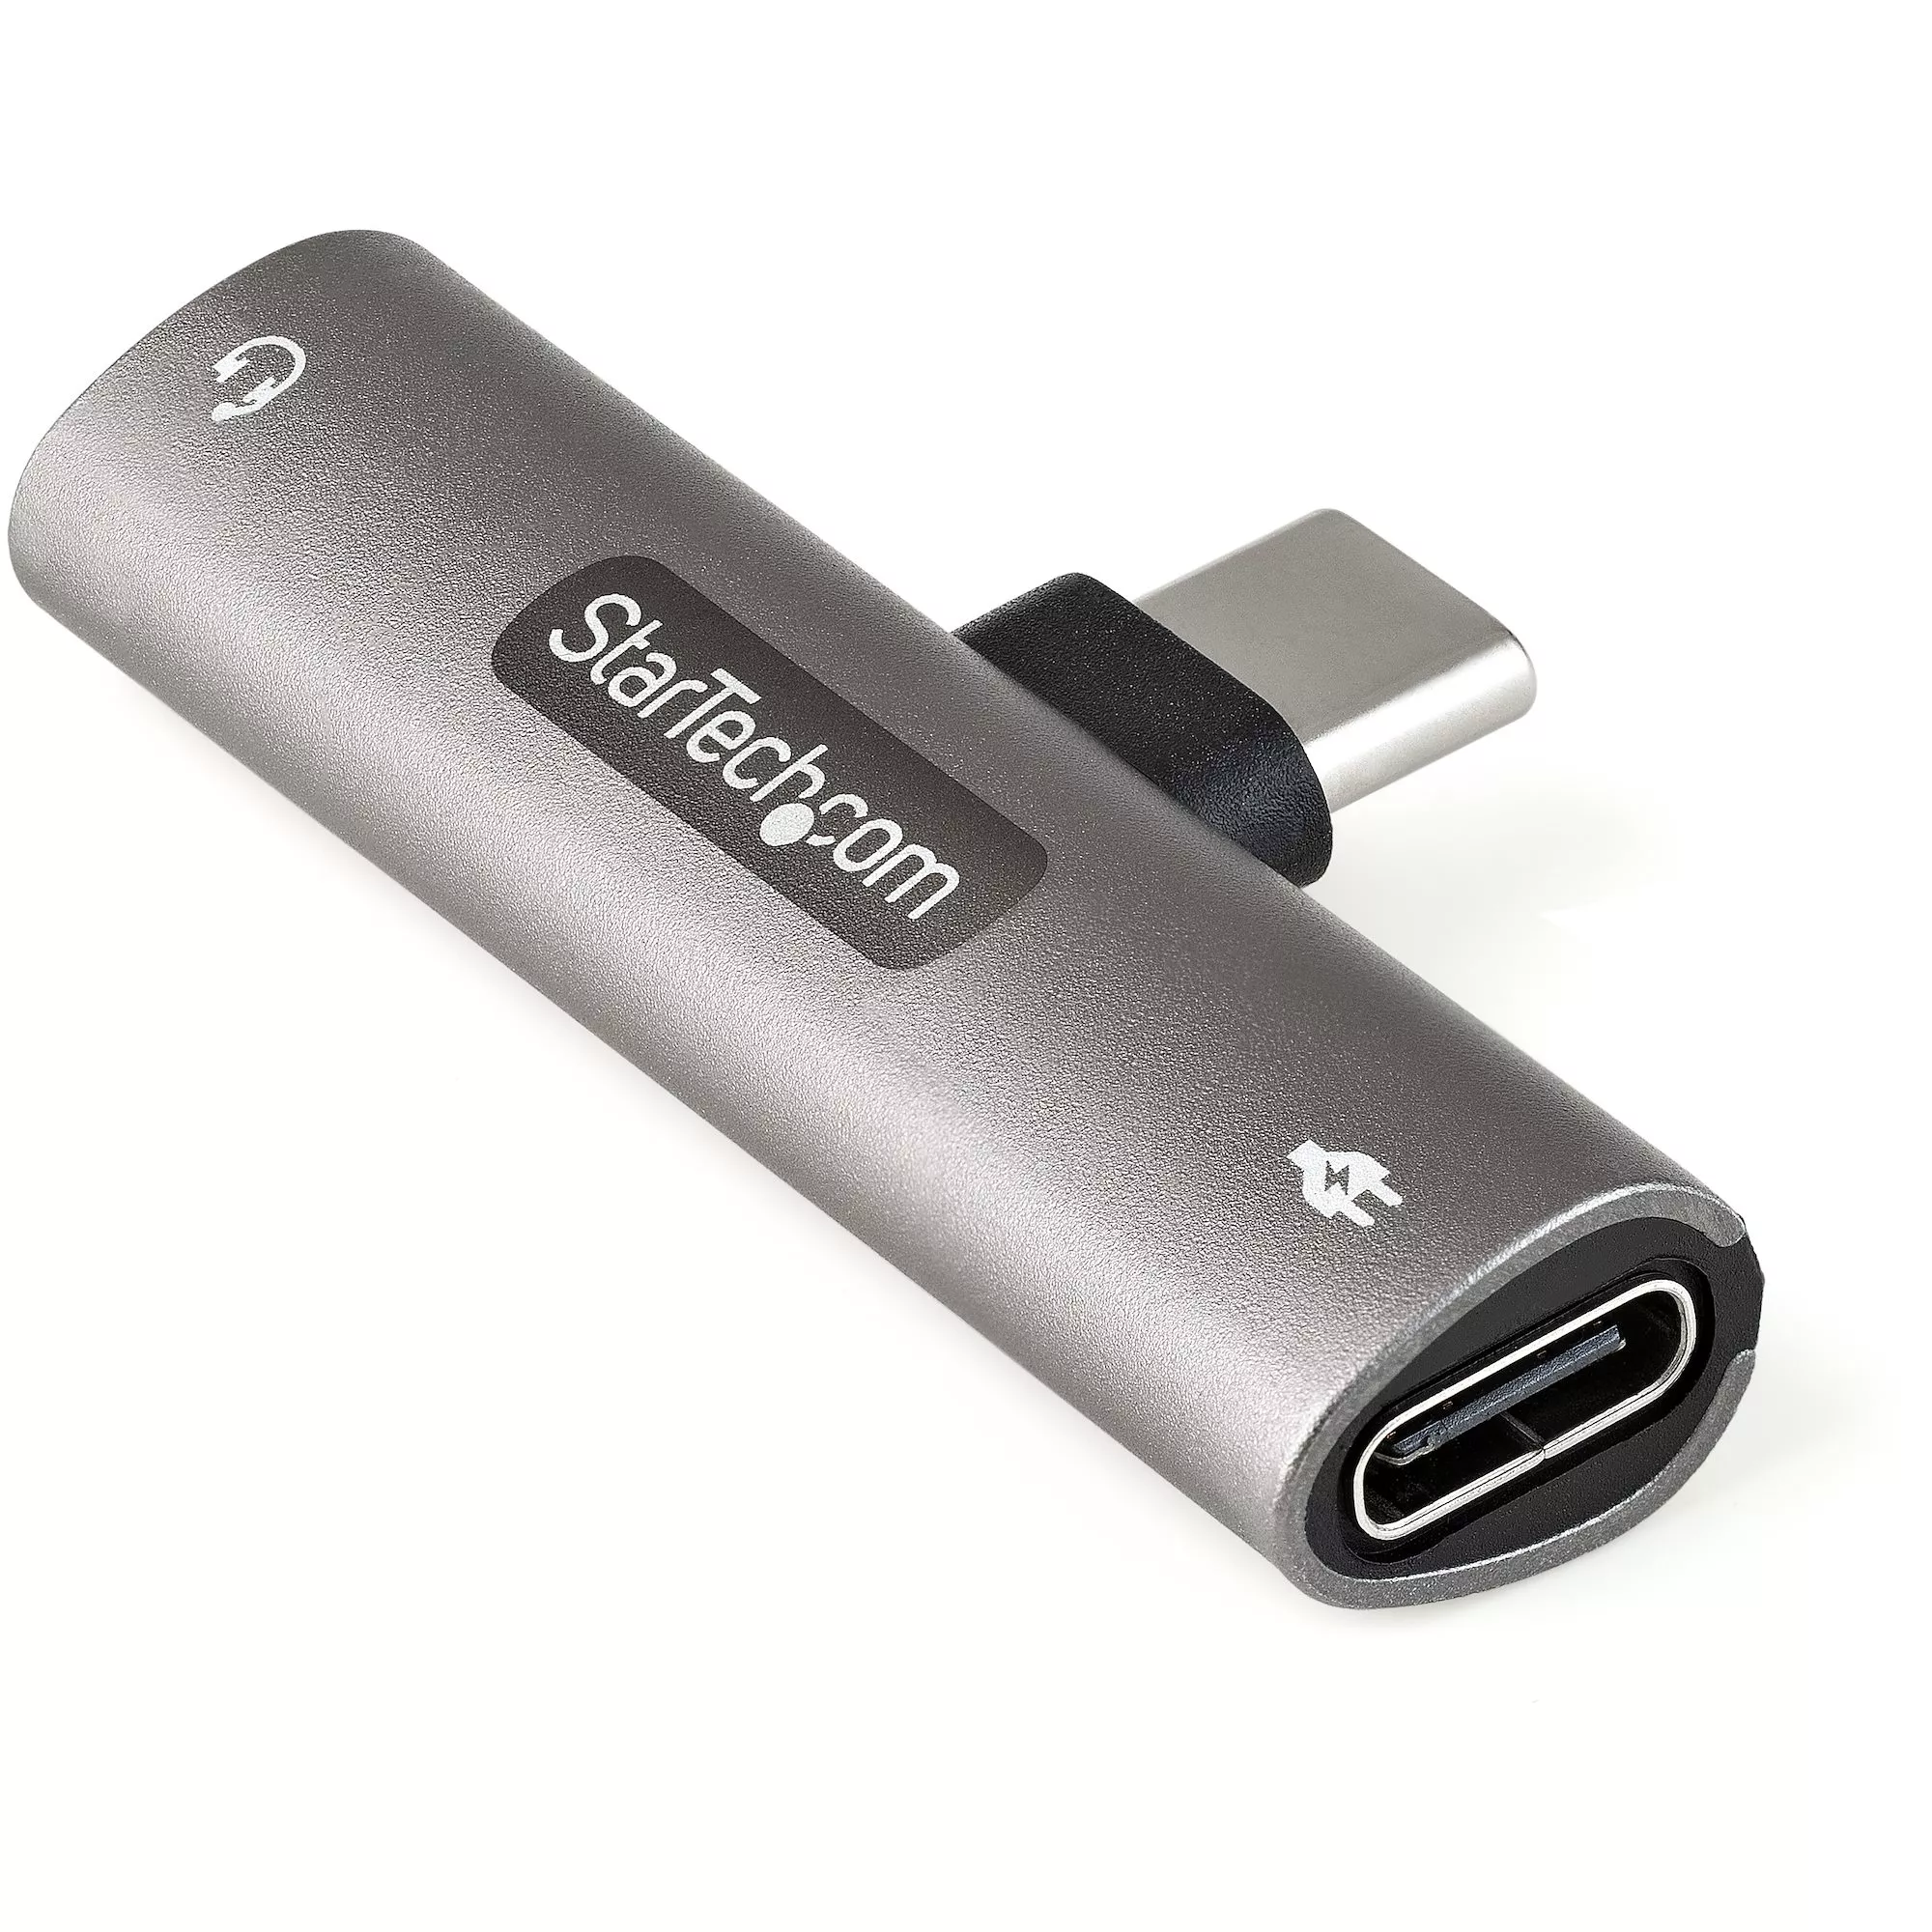 Achat StarTech.com Adaptateur USB-C Audio & Chargeur au meilleur prix